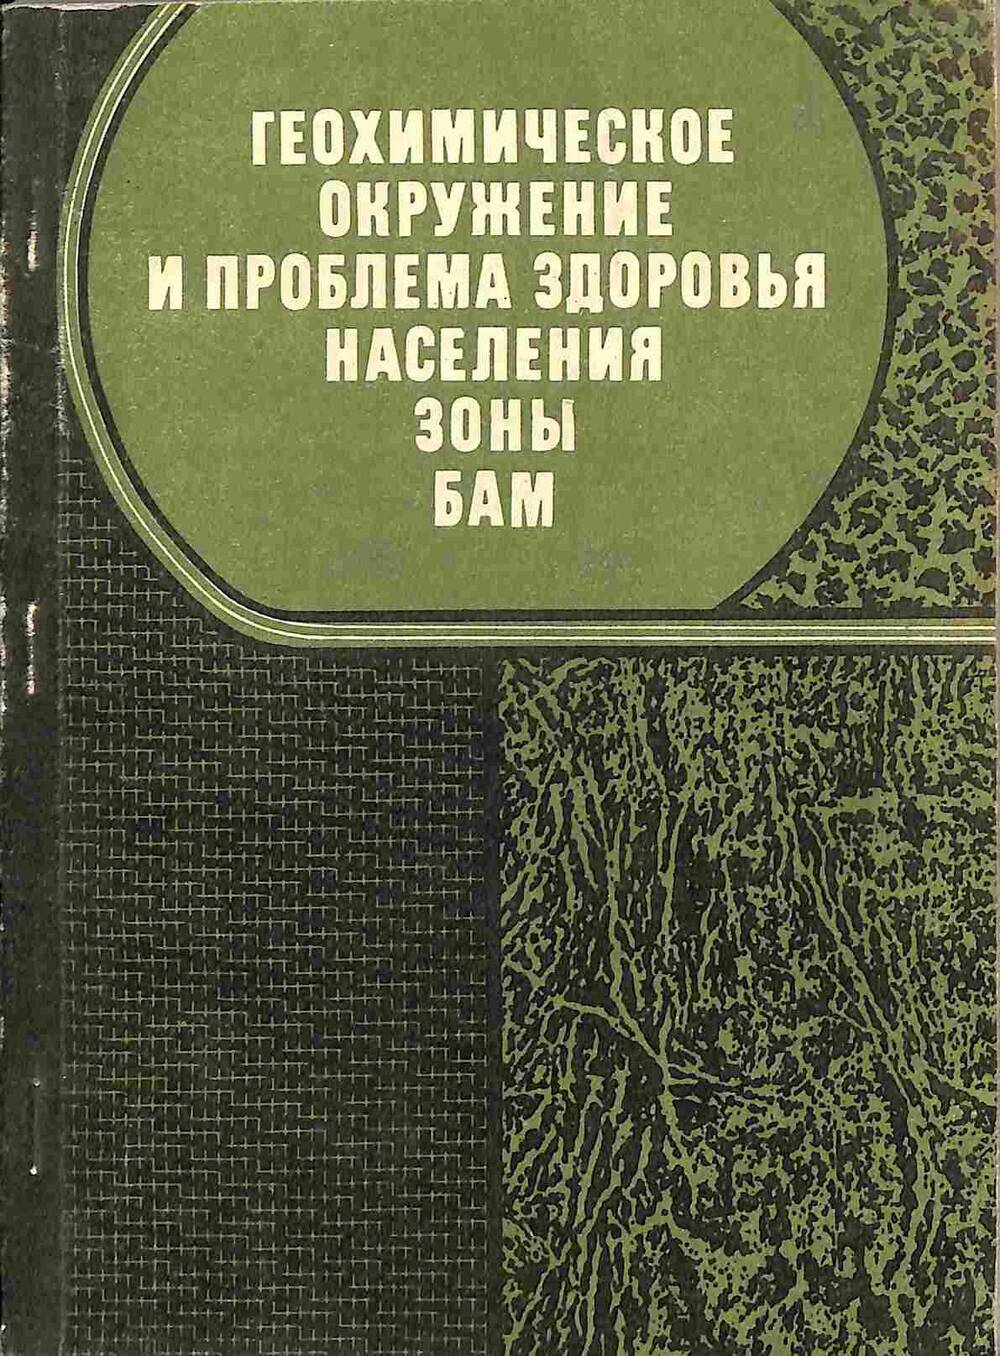 Книга. Геохимическое окружение и проблема здоровья населения зоны БАМ. Новосибирск. 1982 год